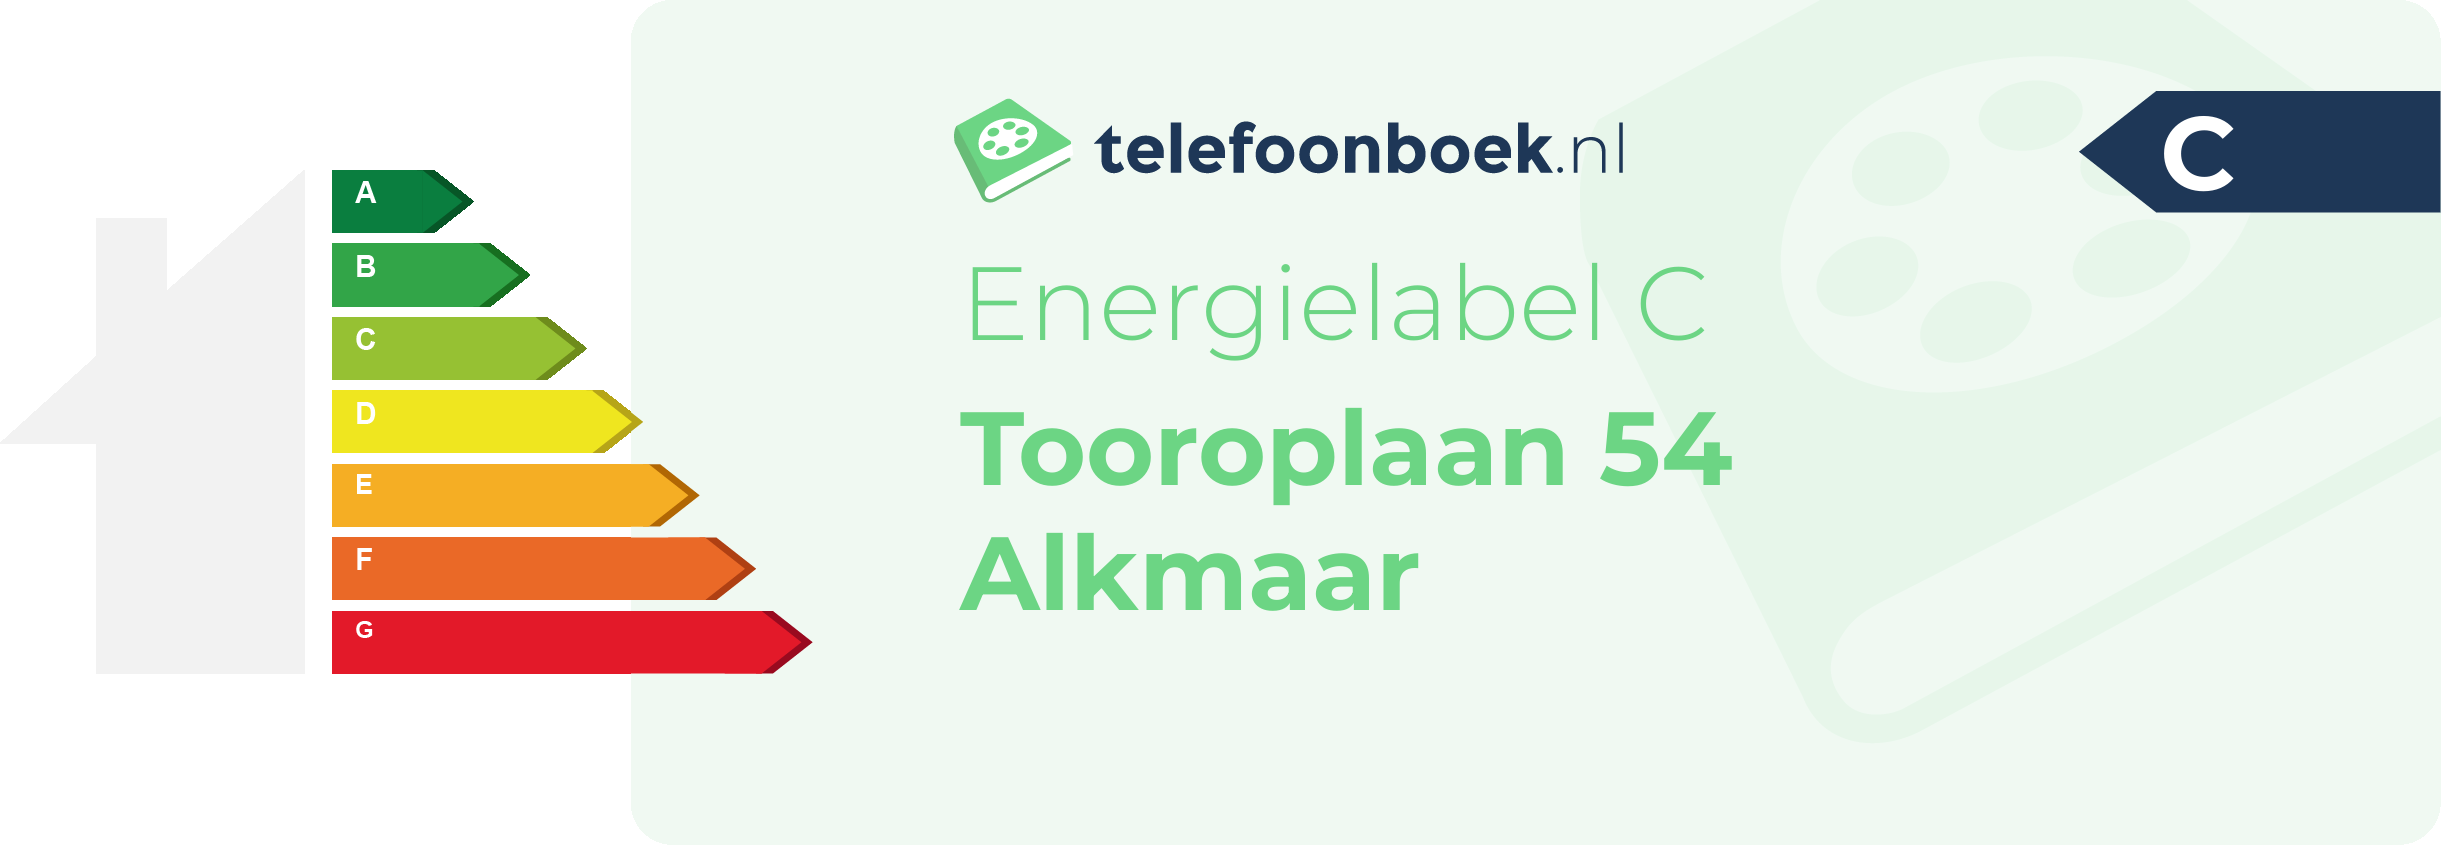 Energielabel Tooroplaan 54 Alkmaar